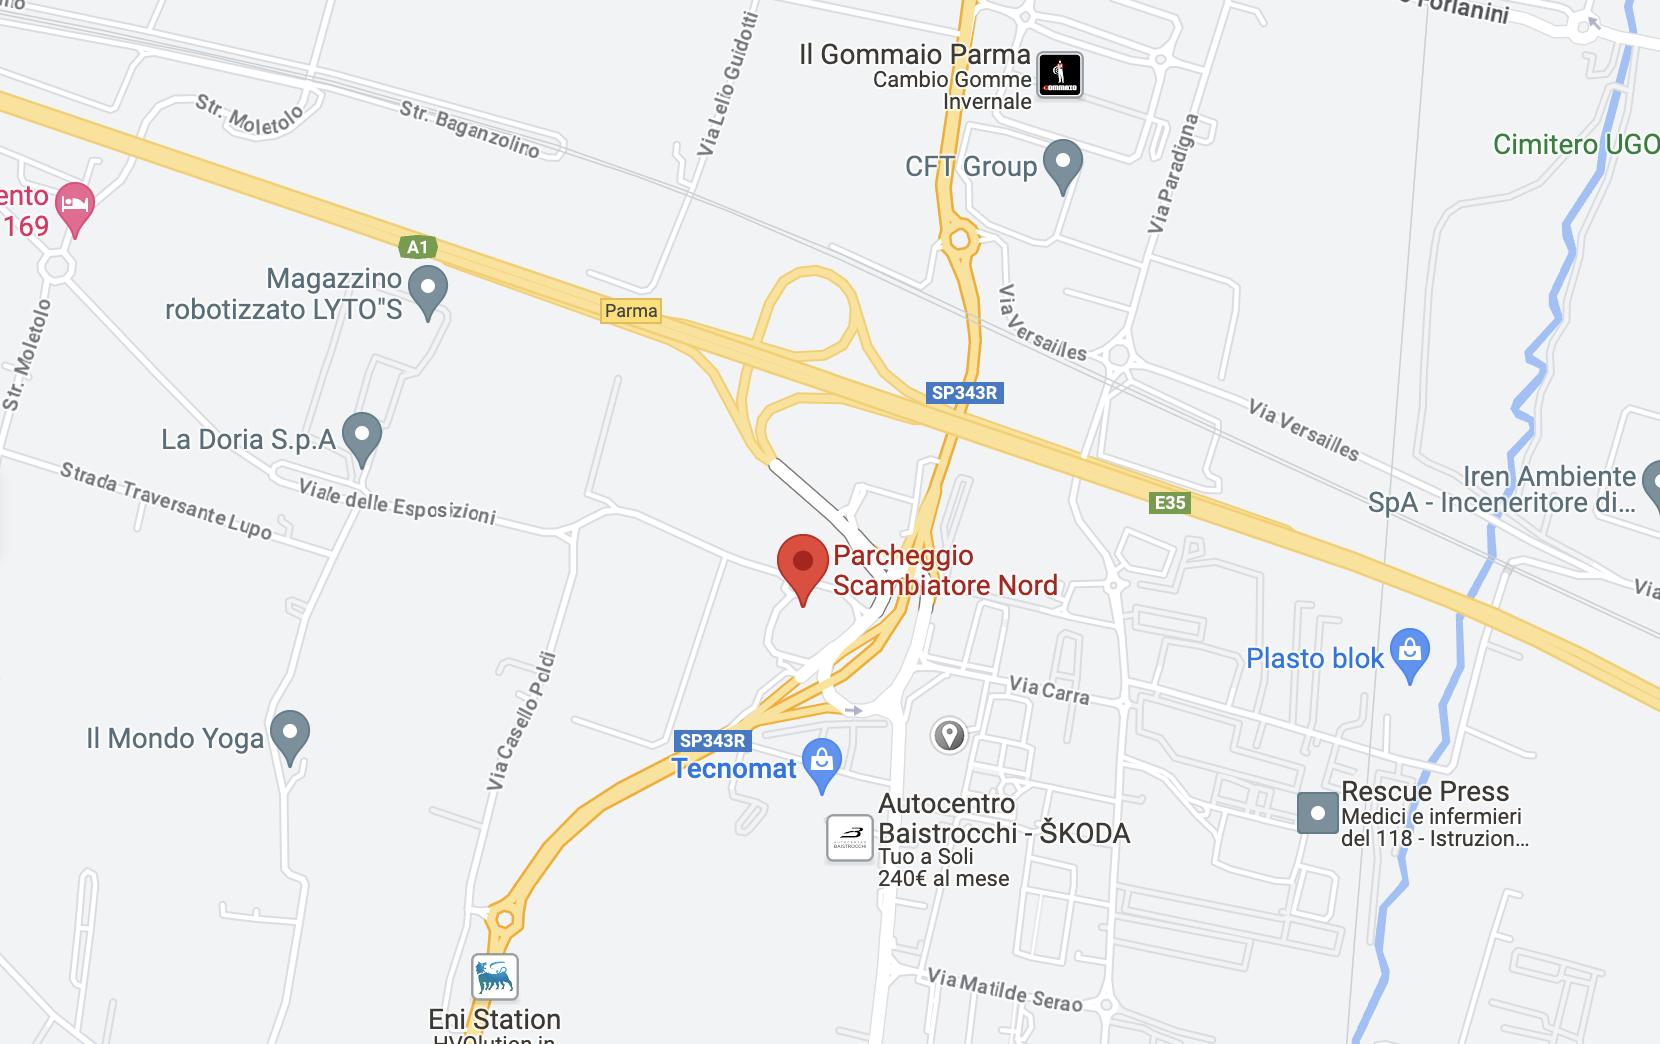 Parma Modena parcheggio scambiatore nord